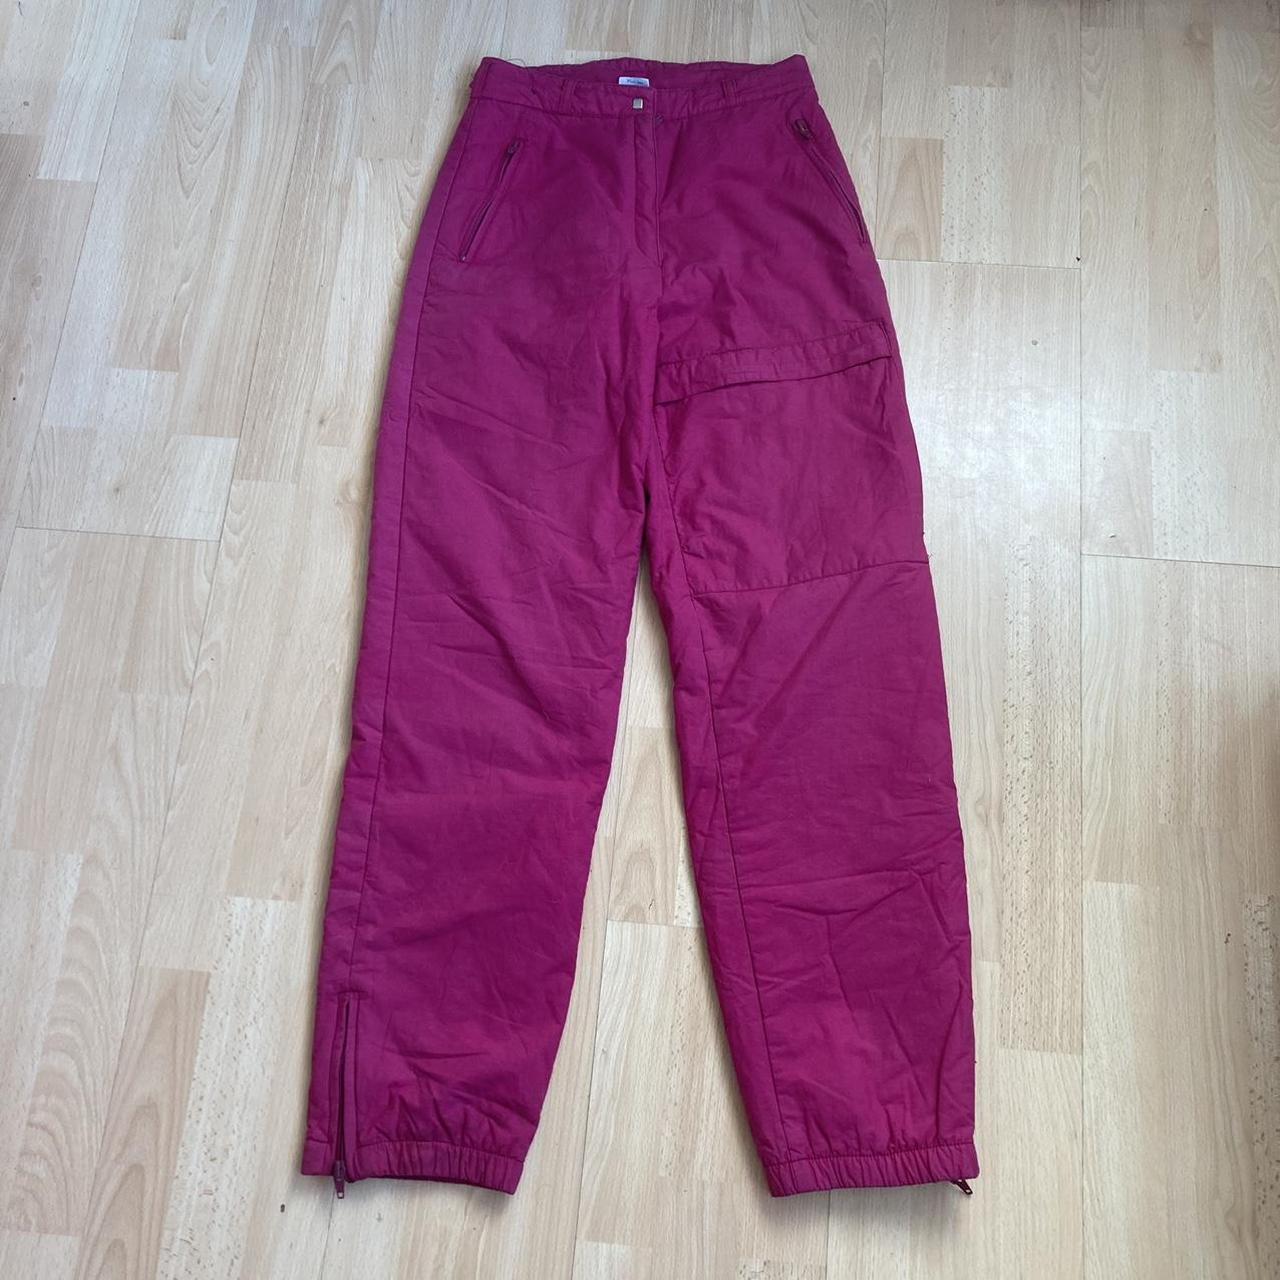 Vintage hot pink cargo pants 🦋🦋🦋 Incredible... - Depop